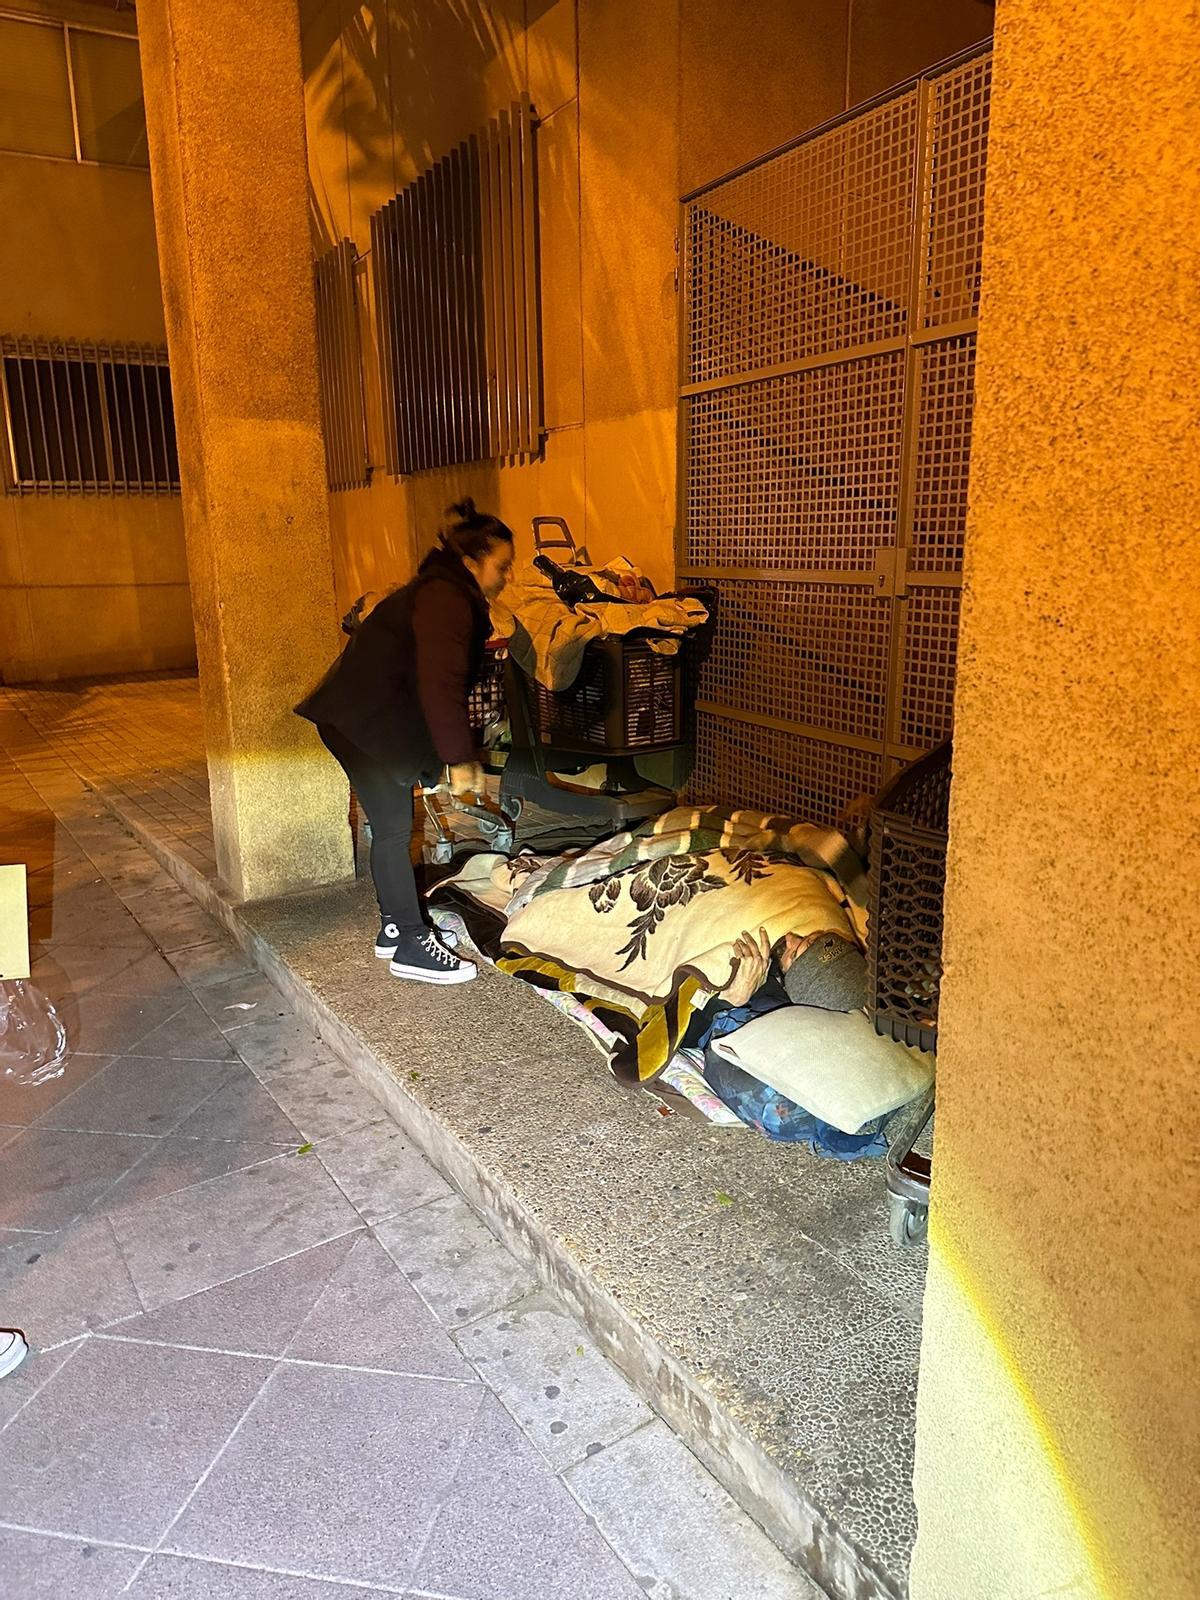 Una voluntaria se entrevista con un indigente que duerme junto a la fachada del instituto Carrús, en Elche